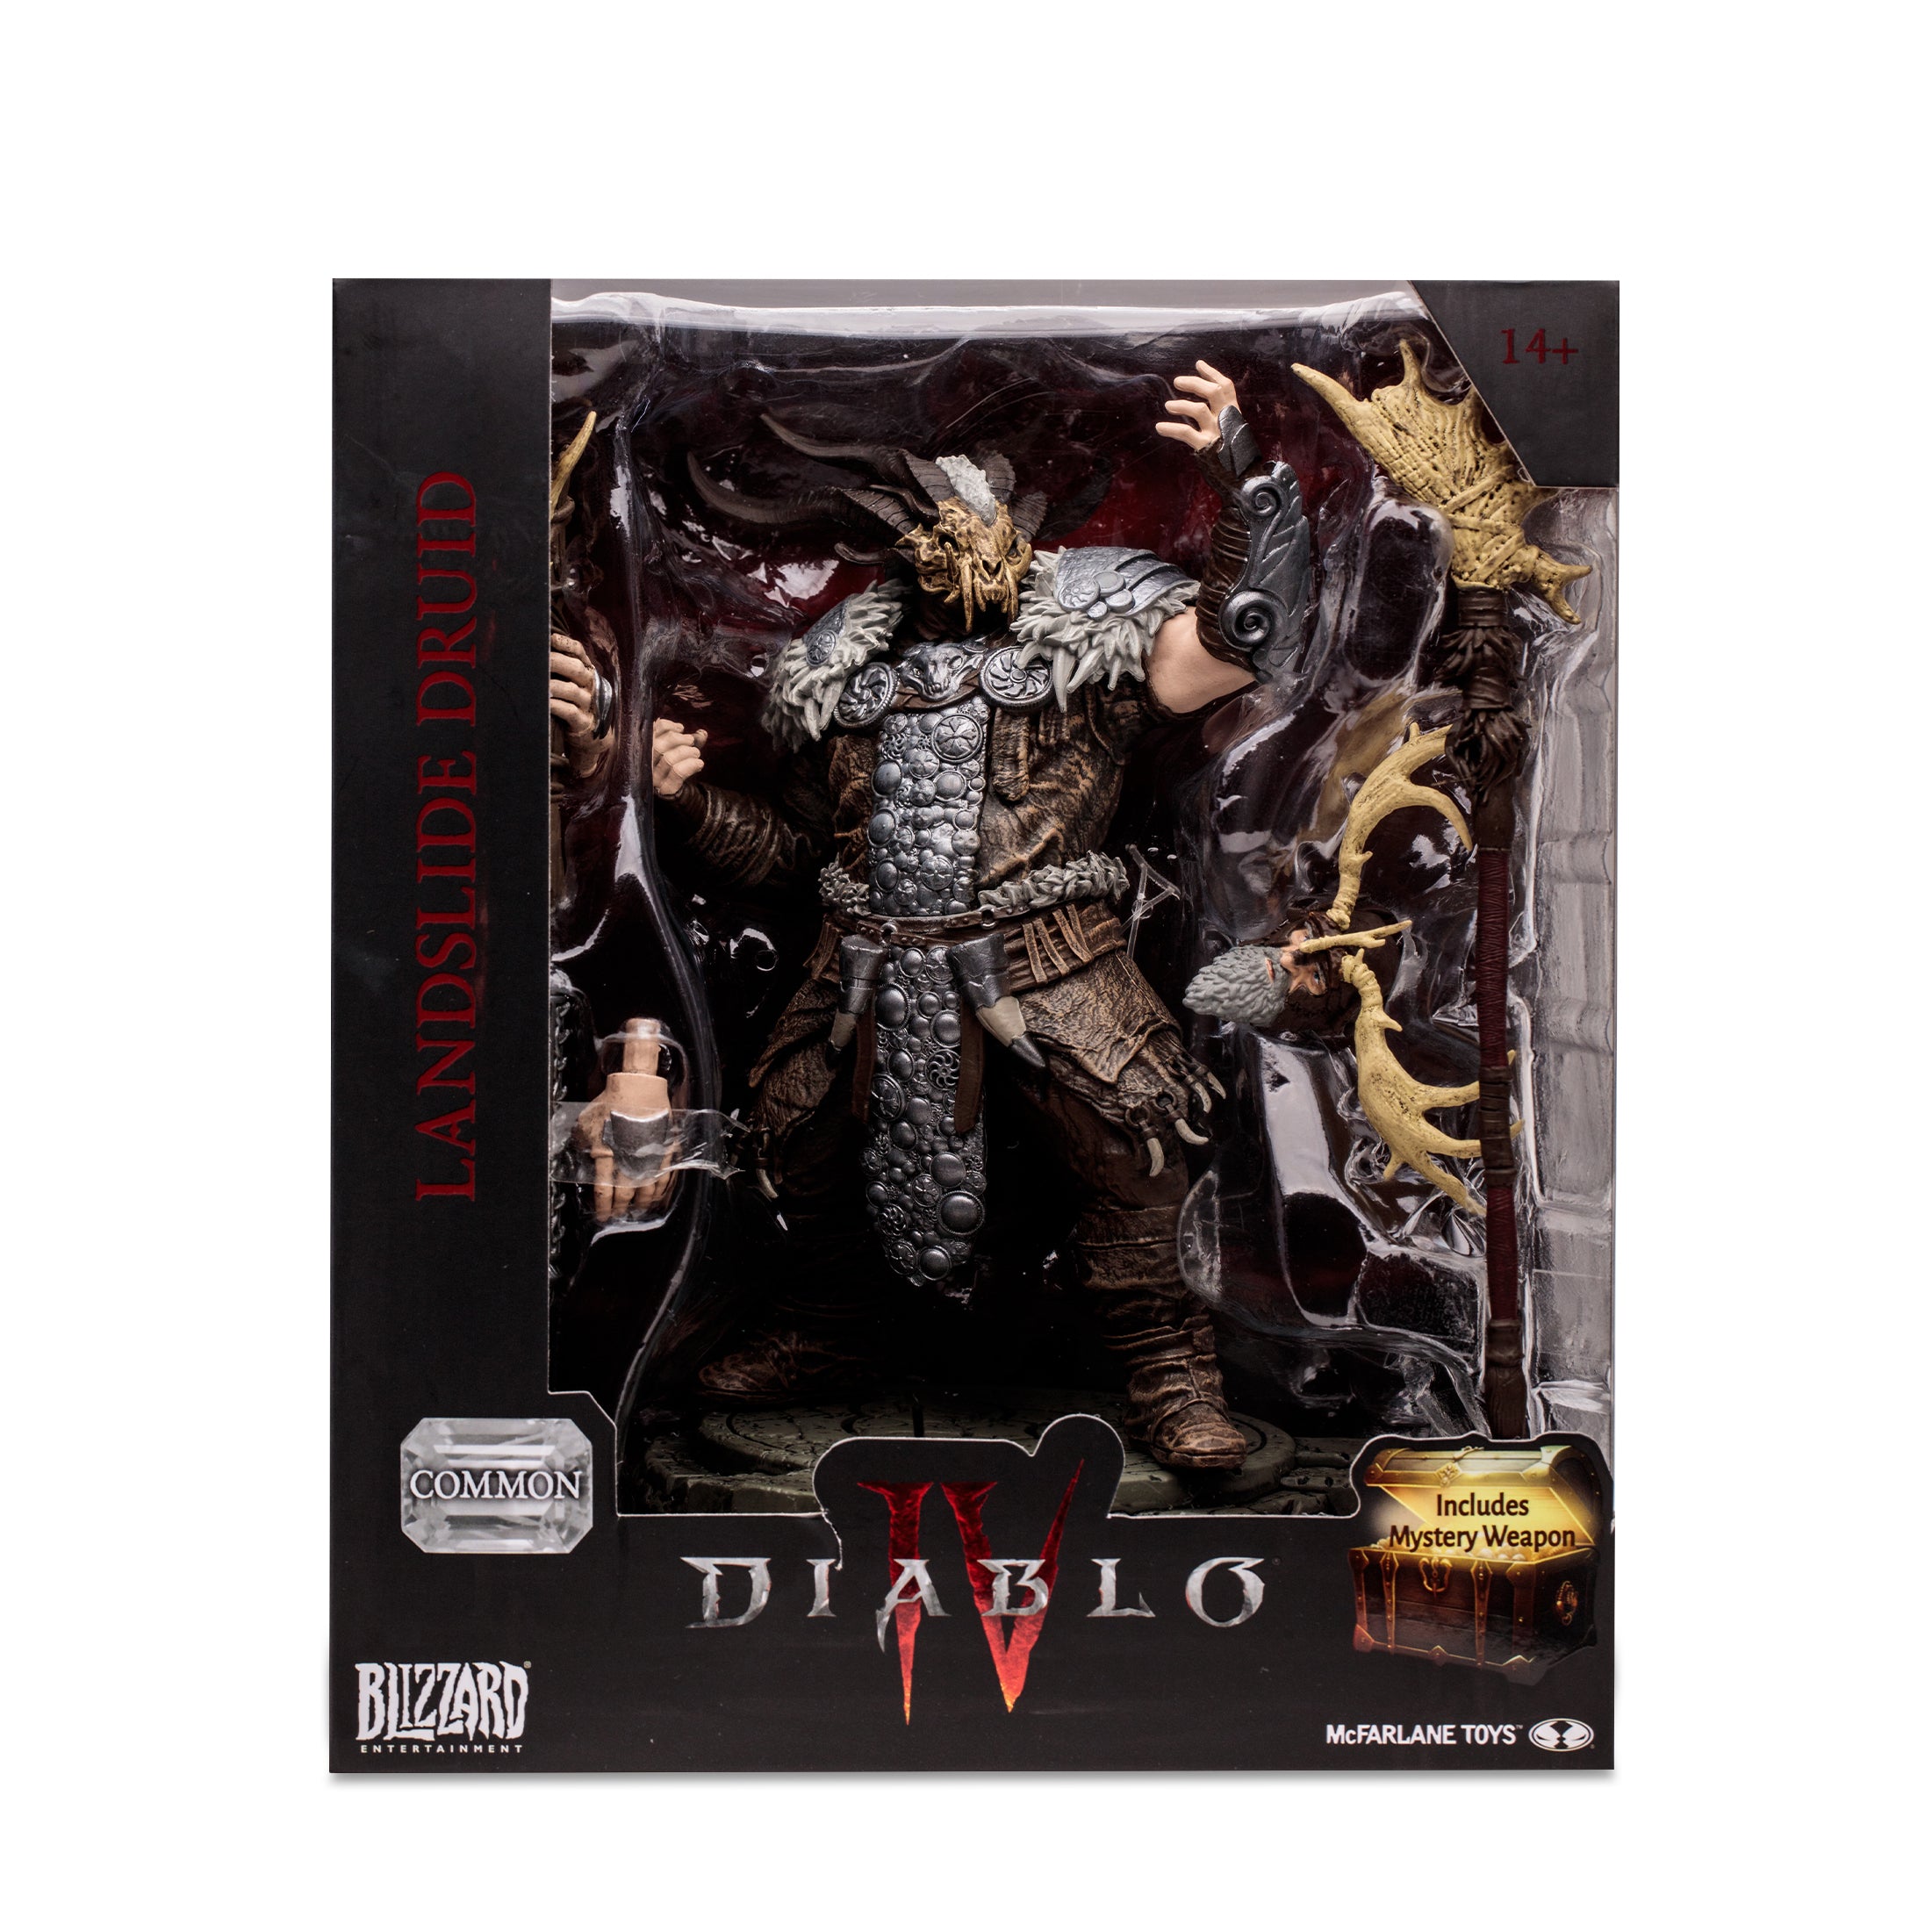 McFarlane Estatua: Diablo IV - Druida Landslide Common Escala 1/12